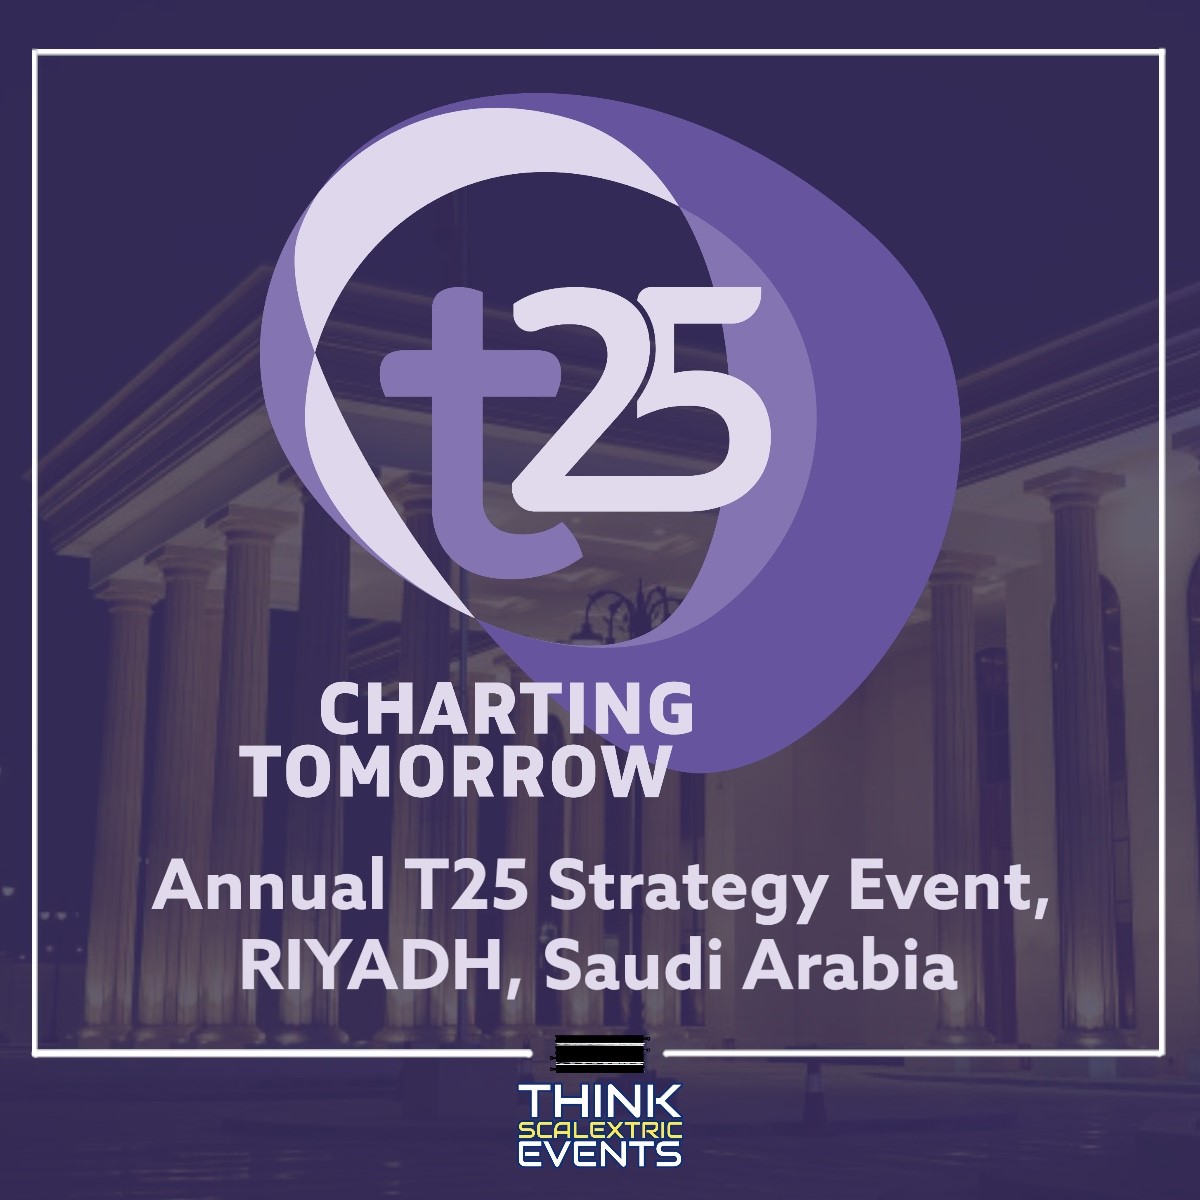 ‘T25 Strategy Event’ in Riyadh